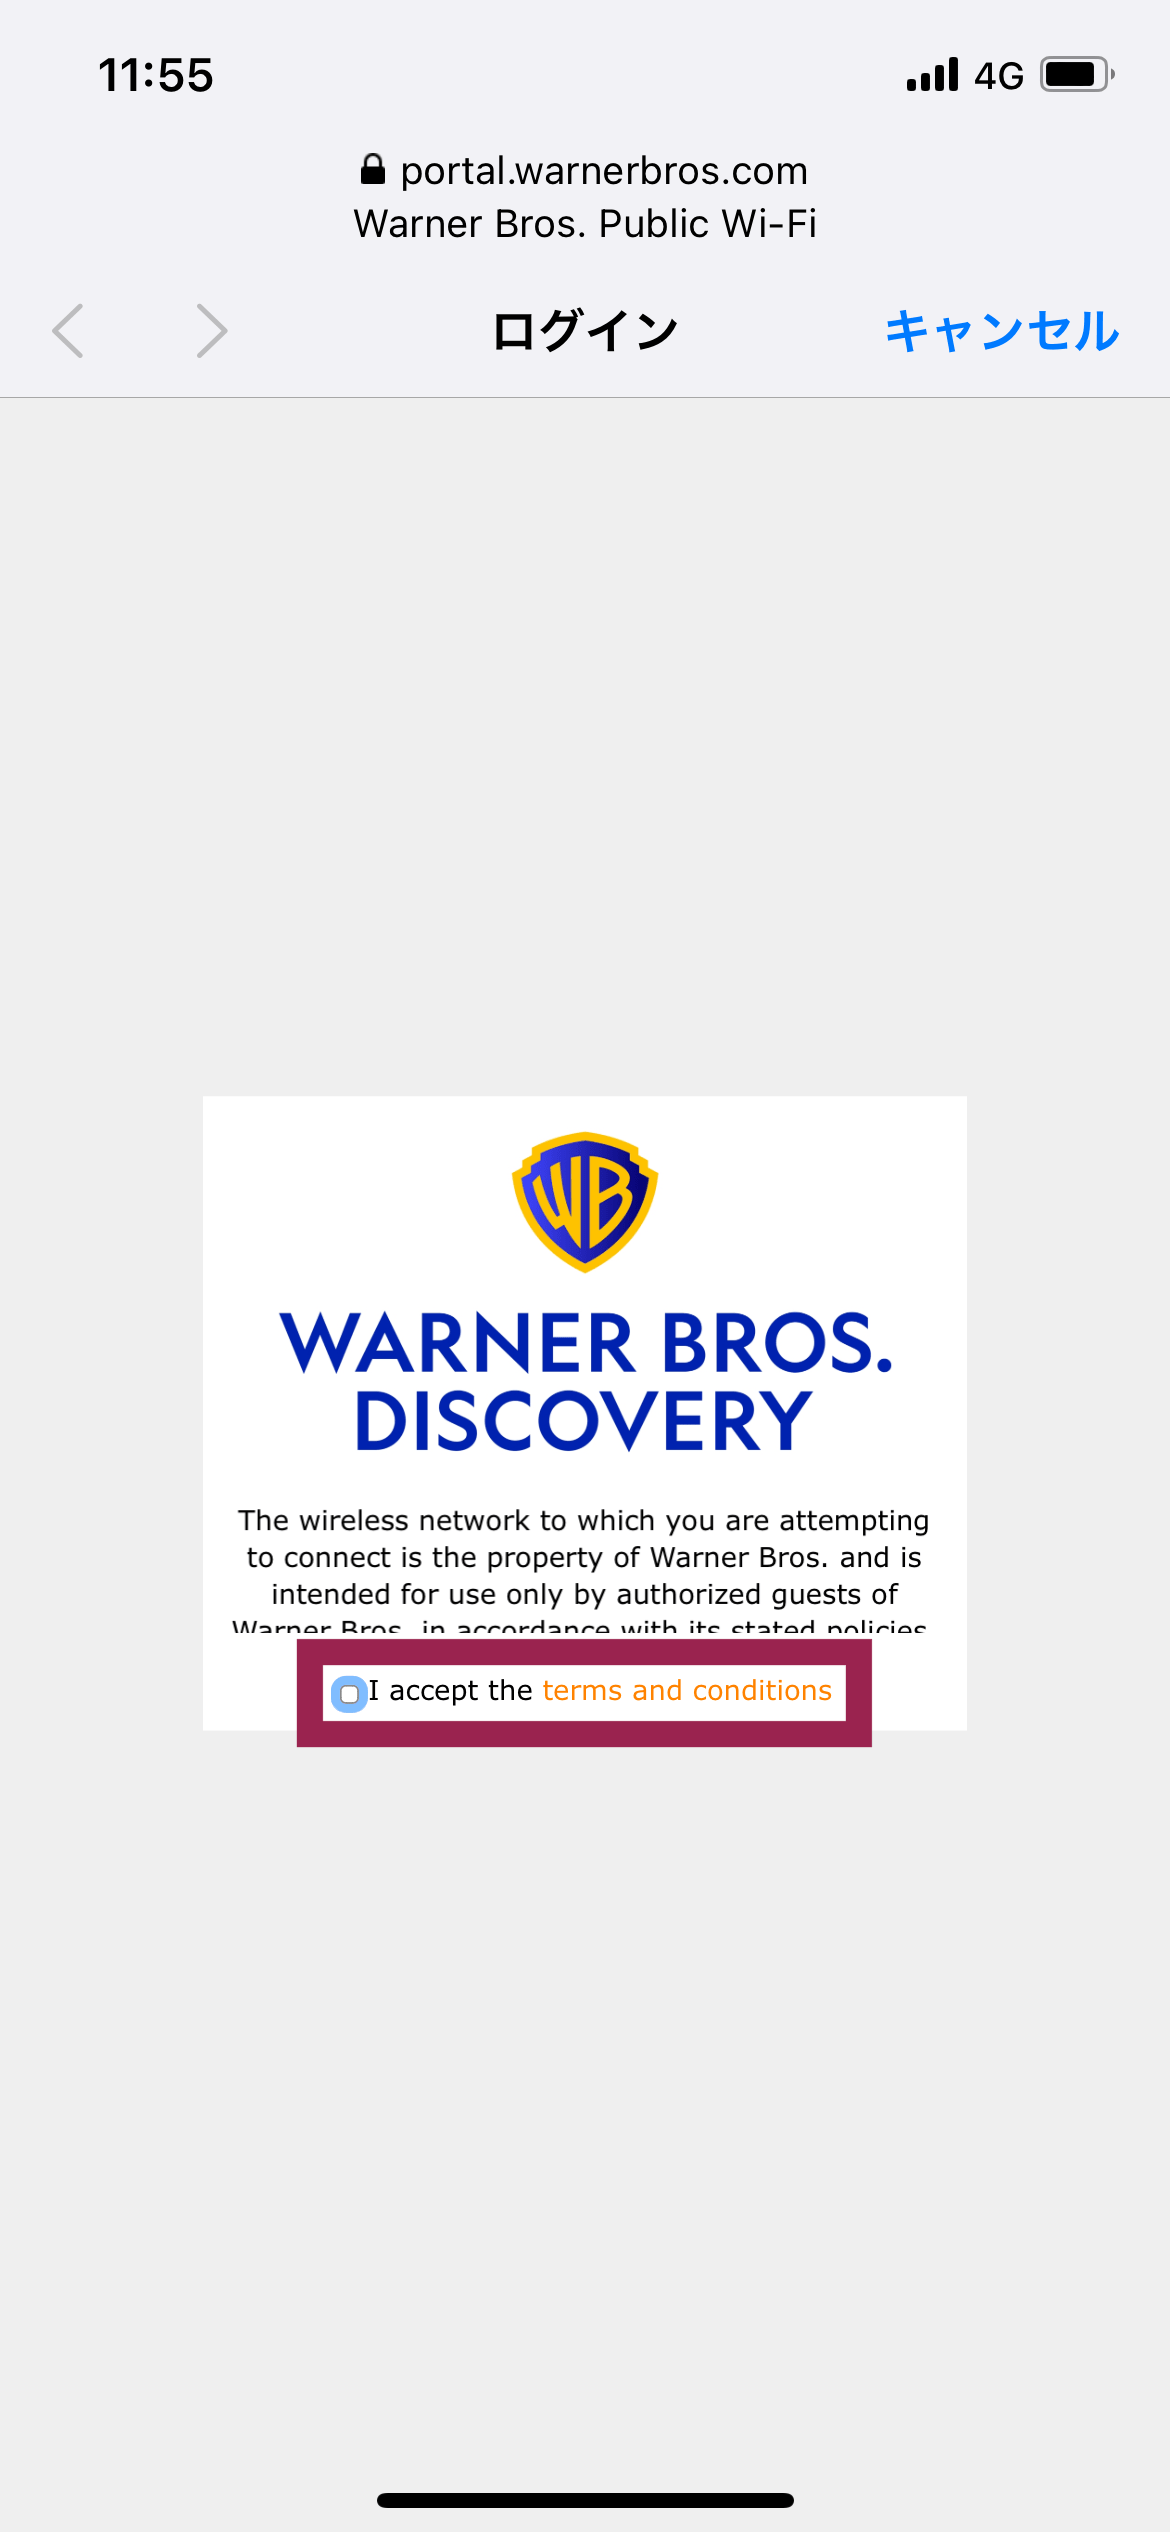 Warner Bros. Public Wi-Fi